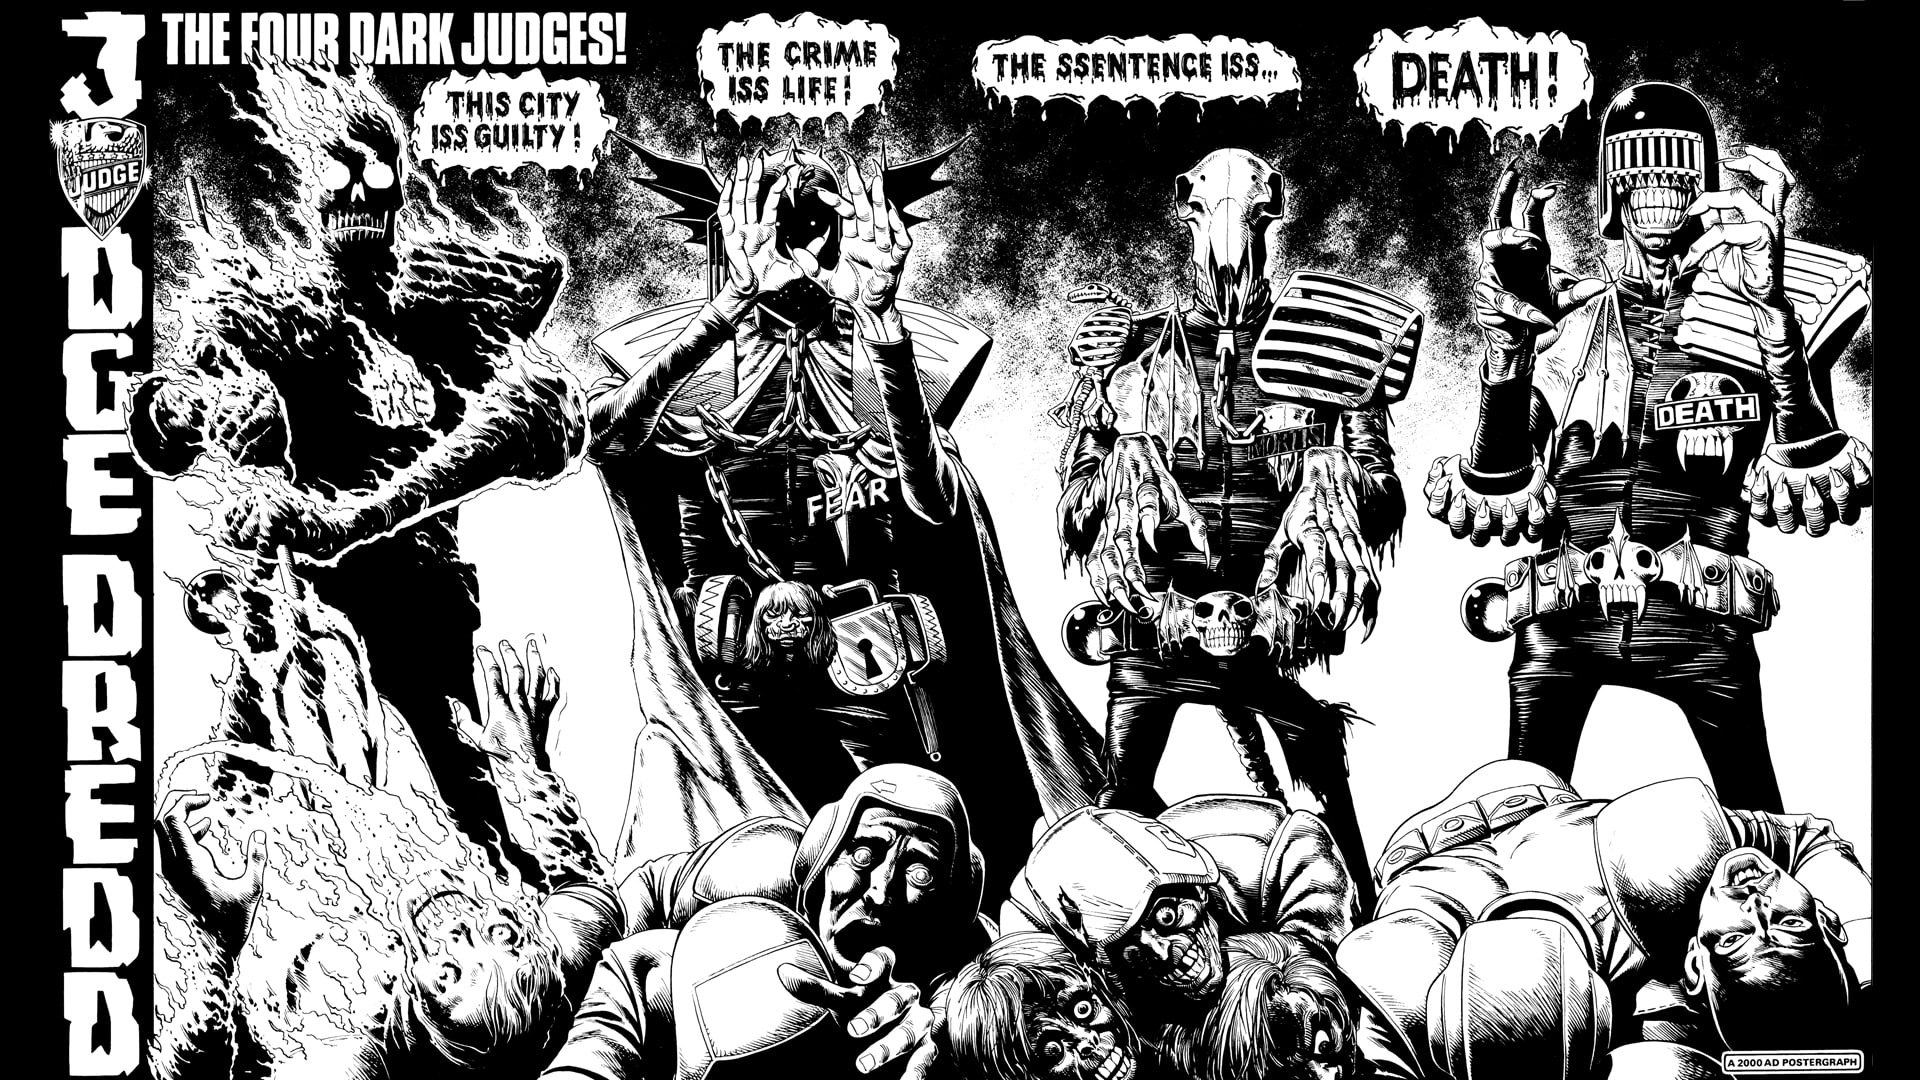 Judge Dredd BW HD, cartoon/comic